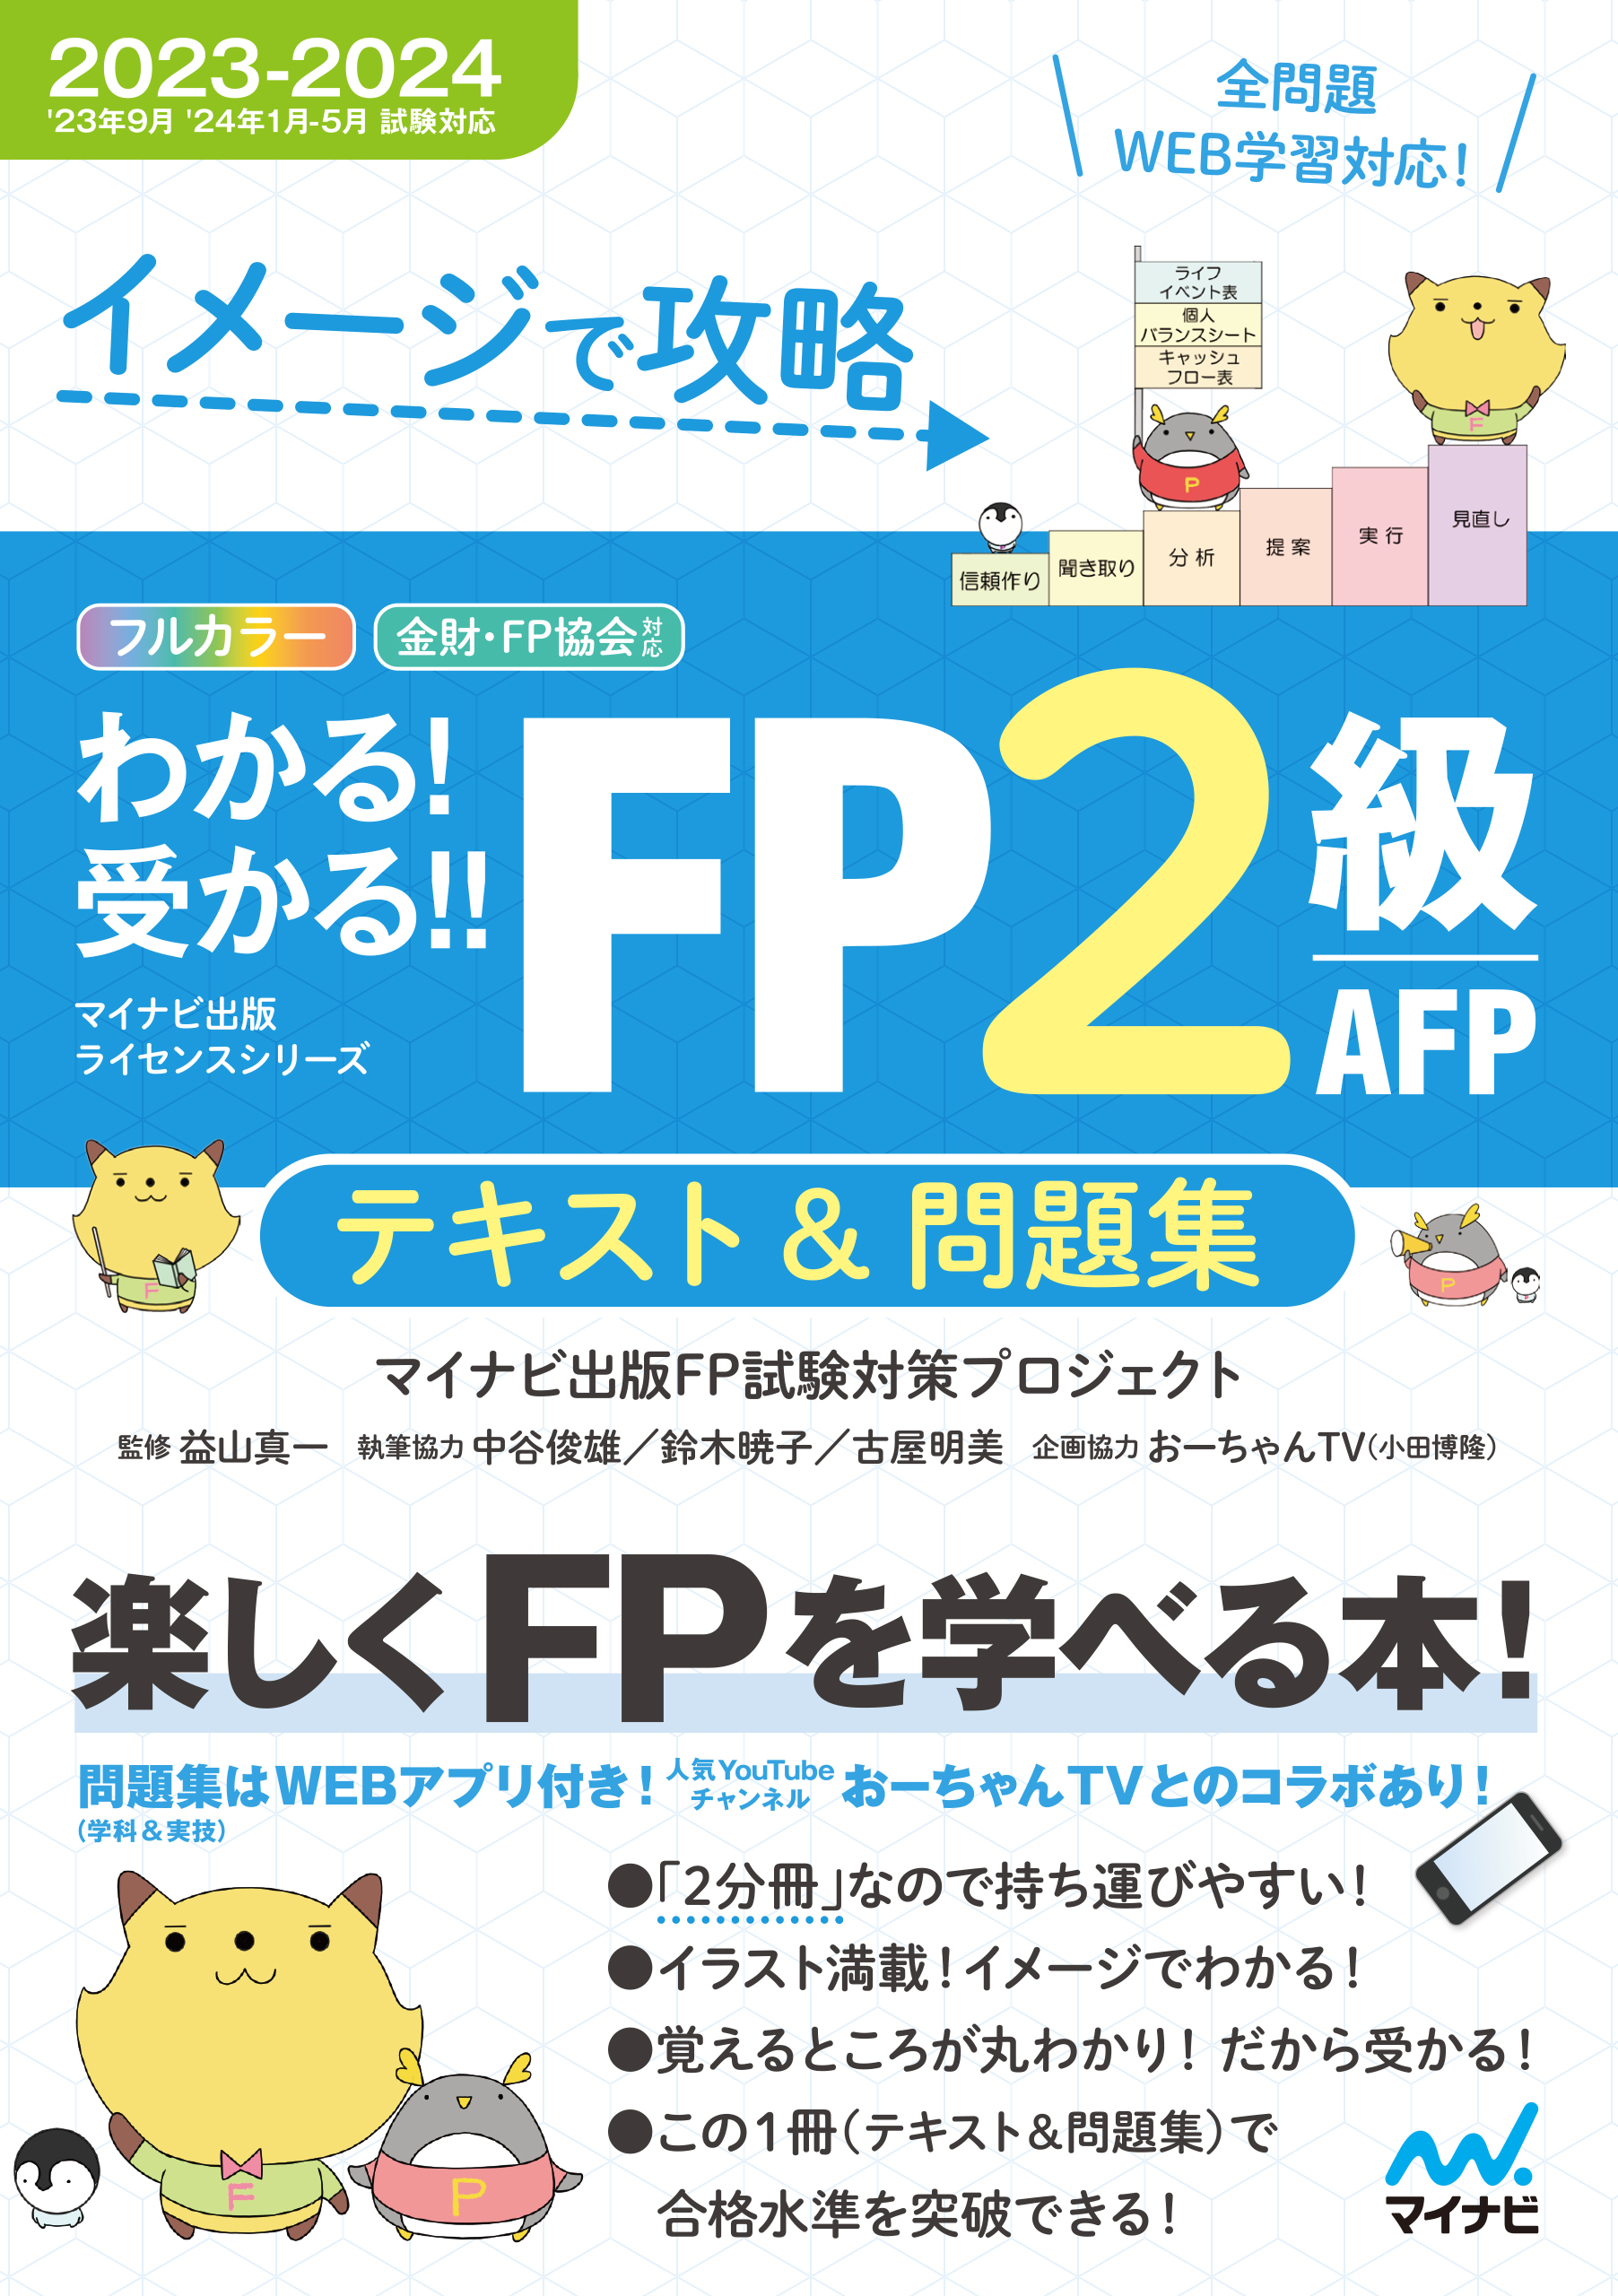 【大量】FP ファイナンシャルプランニング 2級 過去問 模擬試験 実技テキスト